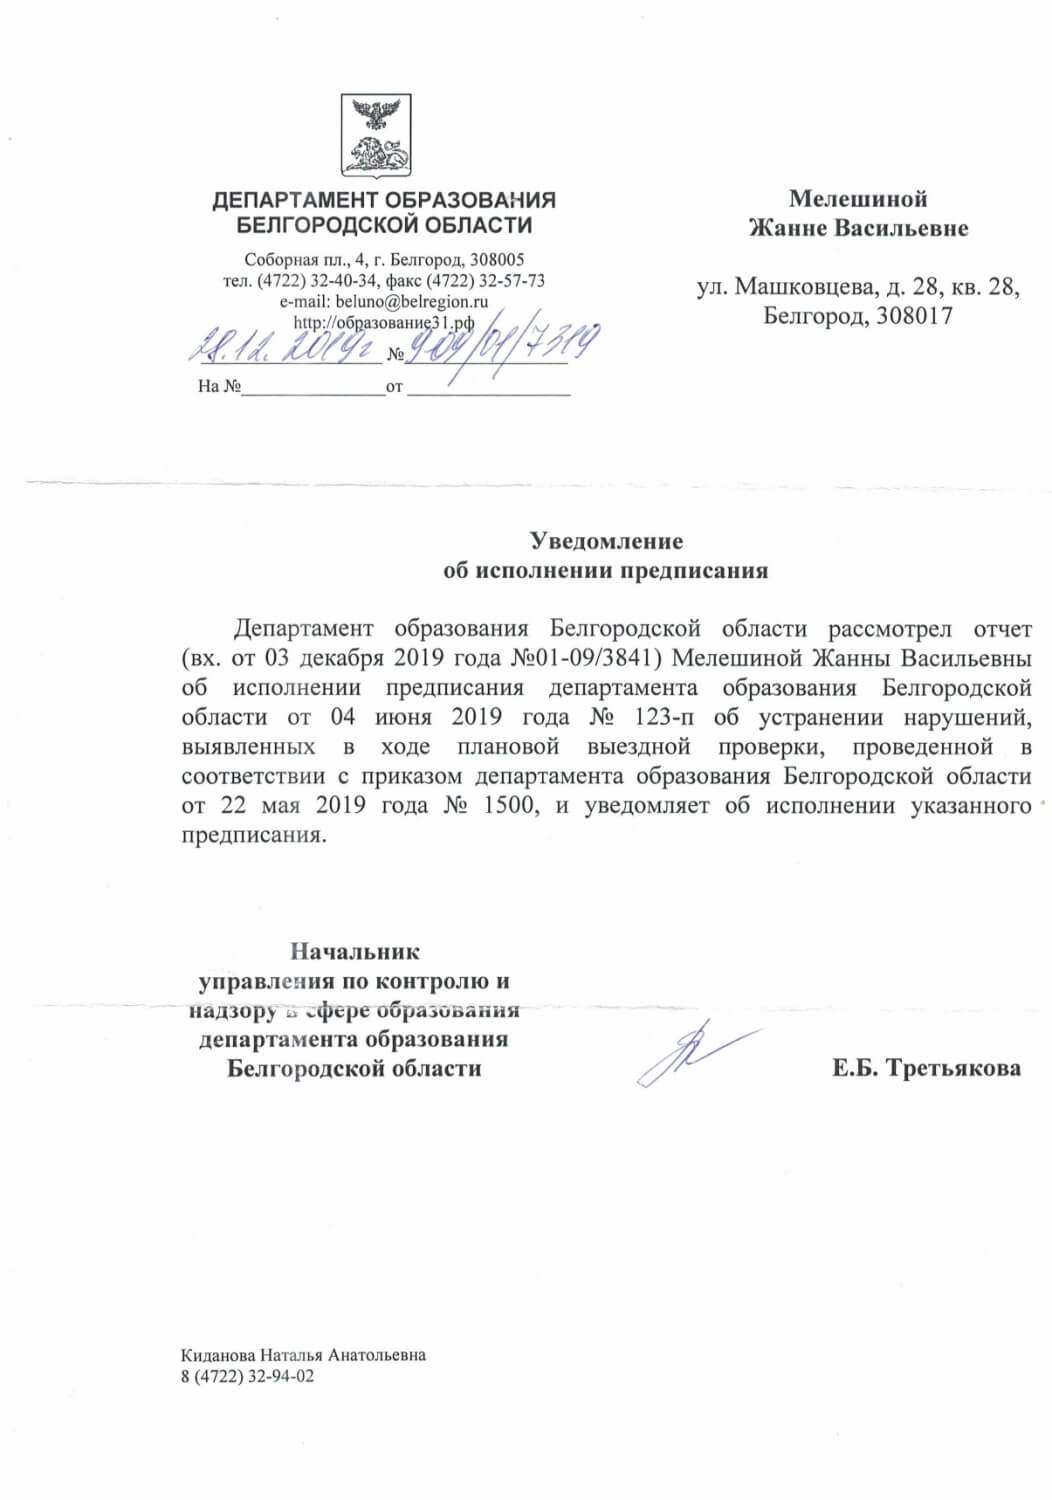 Уведомление об исполнении предписания департамента образования Белгородской области 2019г